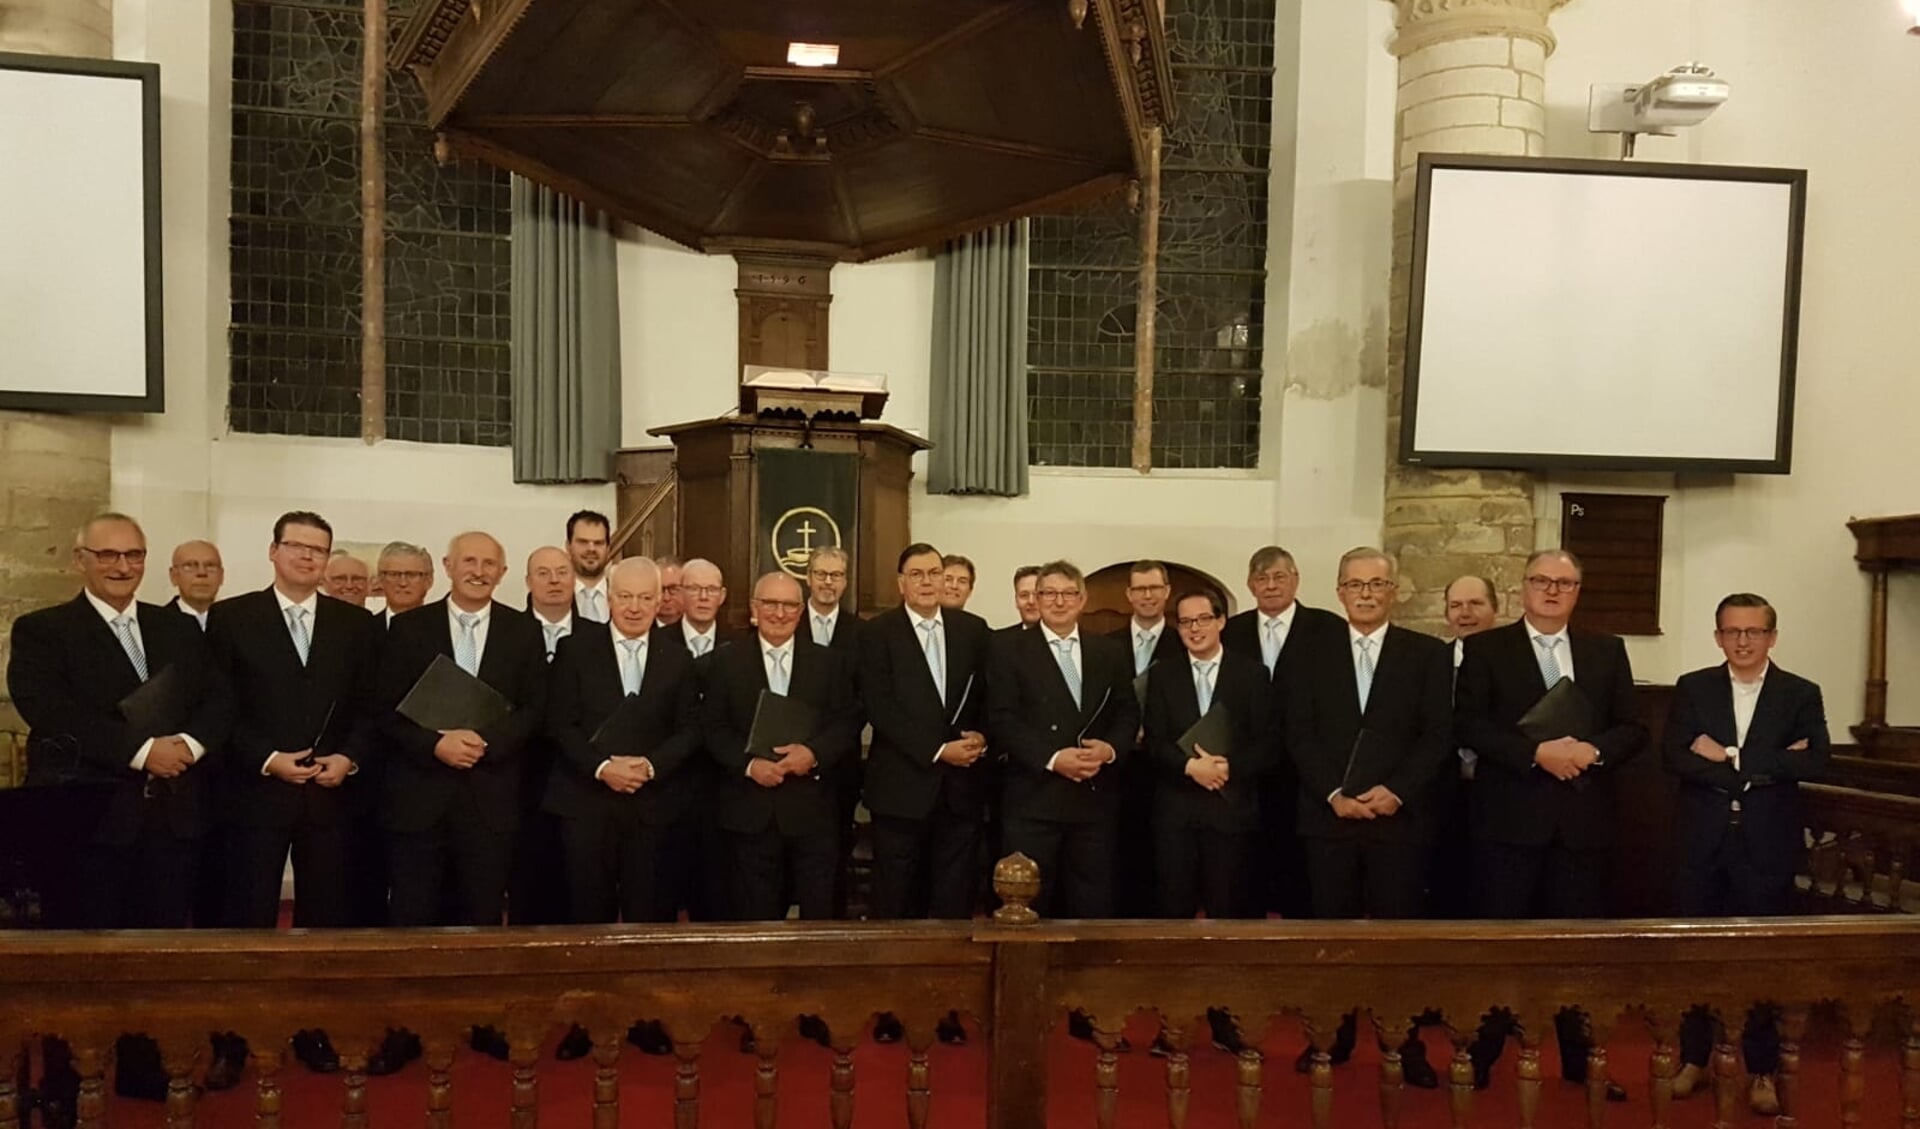 Korendijks mannenkoor zingt op 5 mei in Ridderkerk